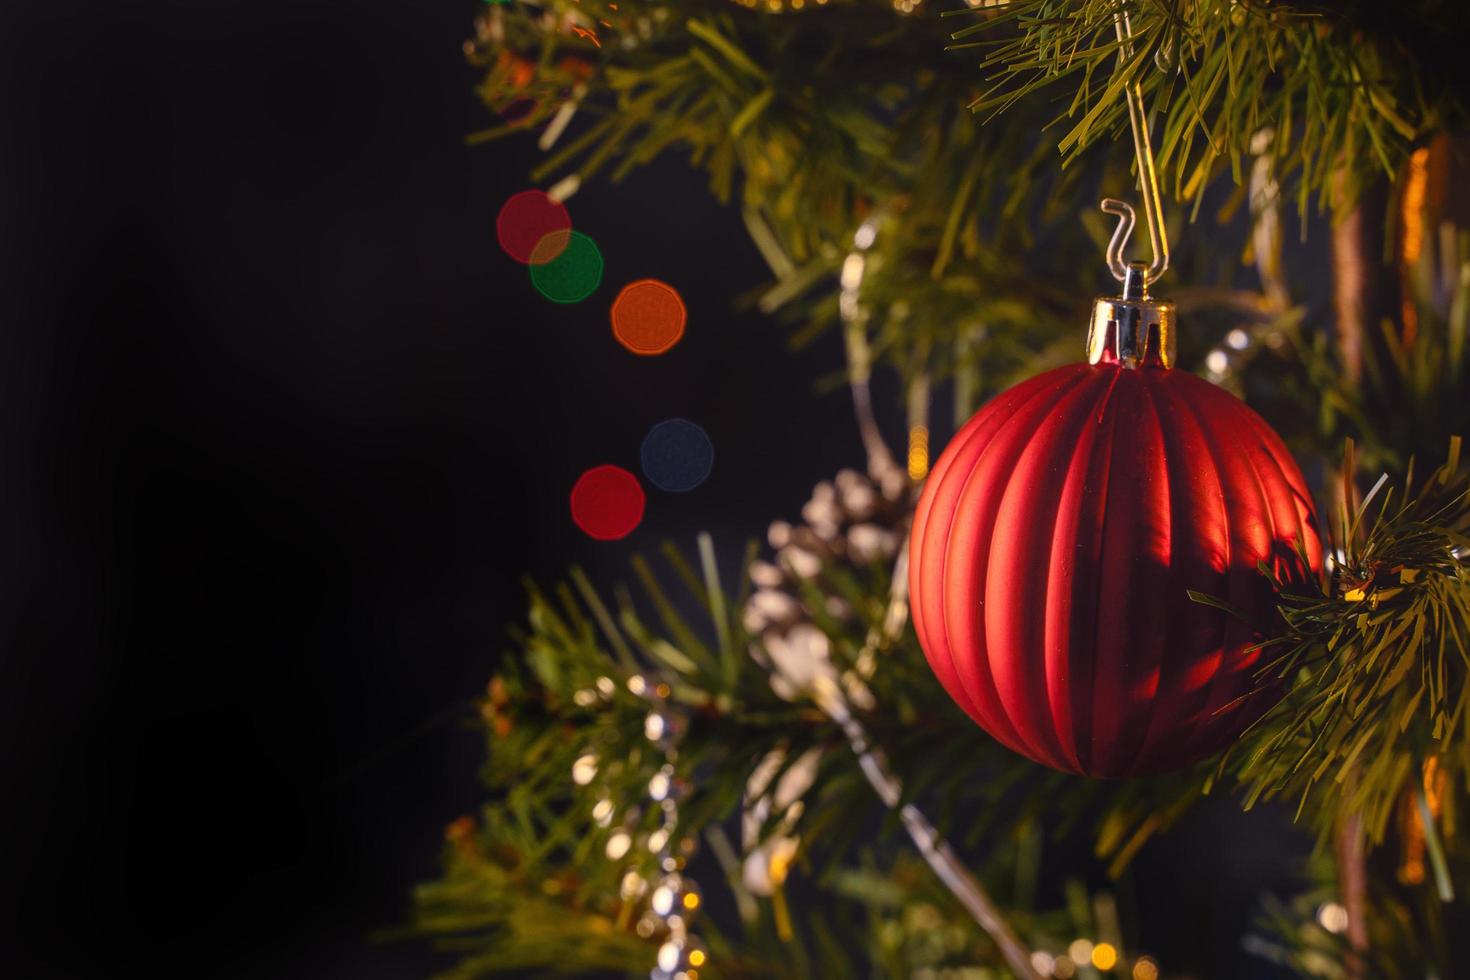 schönes weihnachtsdekorkonzept, am weihnachtsbaum hängende kugel mit funkelndem lichtfleck, verschwommener dunkelschwarzer hintergrund, makrodetail, nahaufnahme. foto